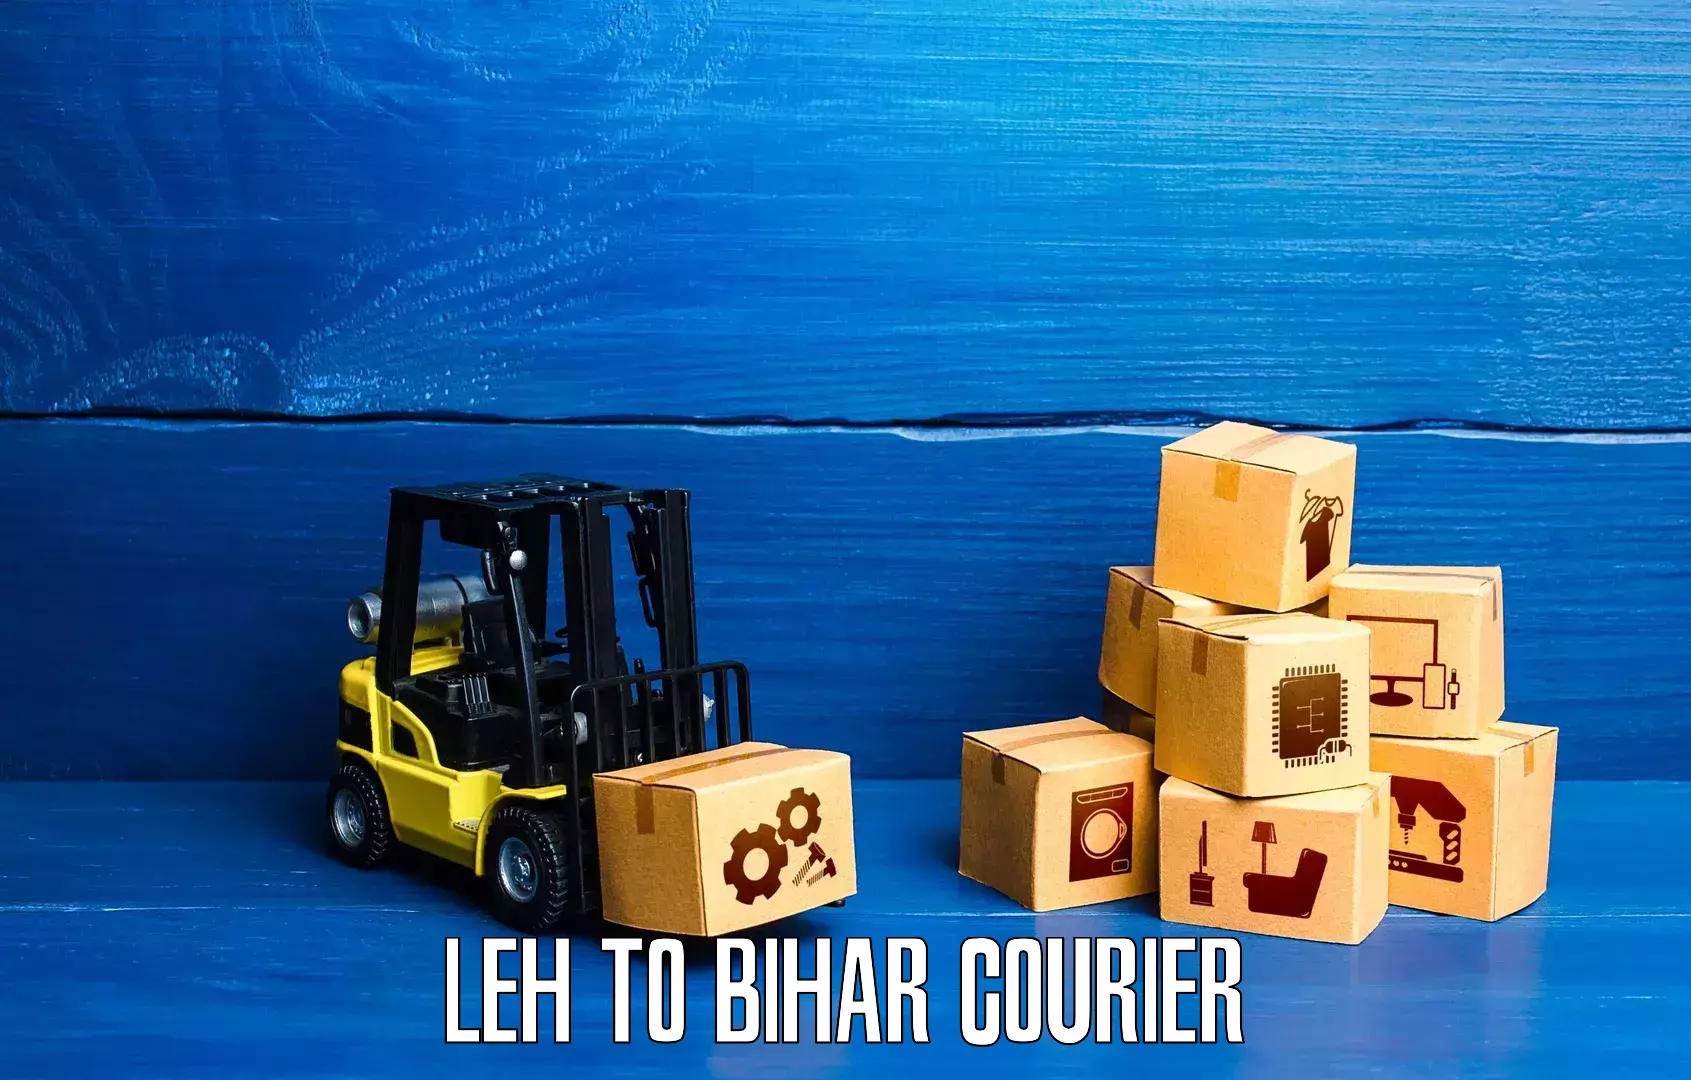 24/7 courier service Leh to Aurangabad Bihar